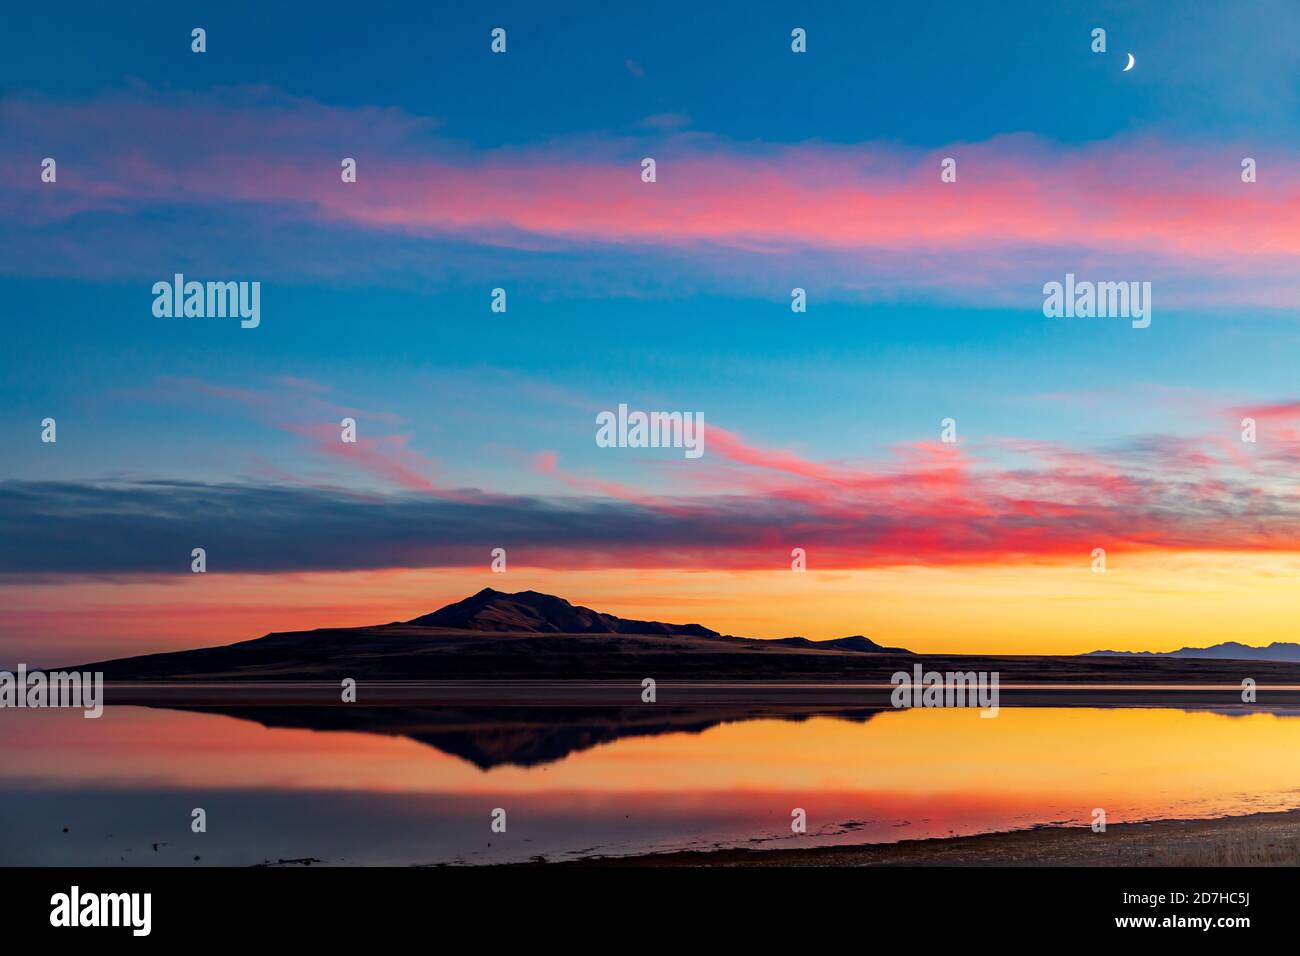 Das Bild von Antelope Island spiegelt sich auf dem Wasser des Großen Salzsees, während der Sonnenuntergang Nachglühen in den Wolken darüber reflektiert. Stockfoto